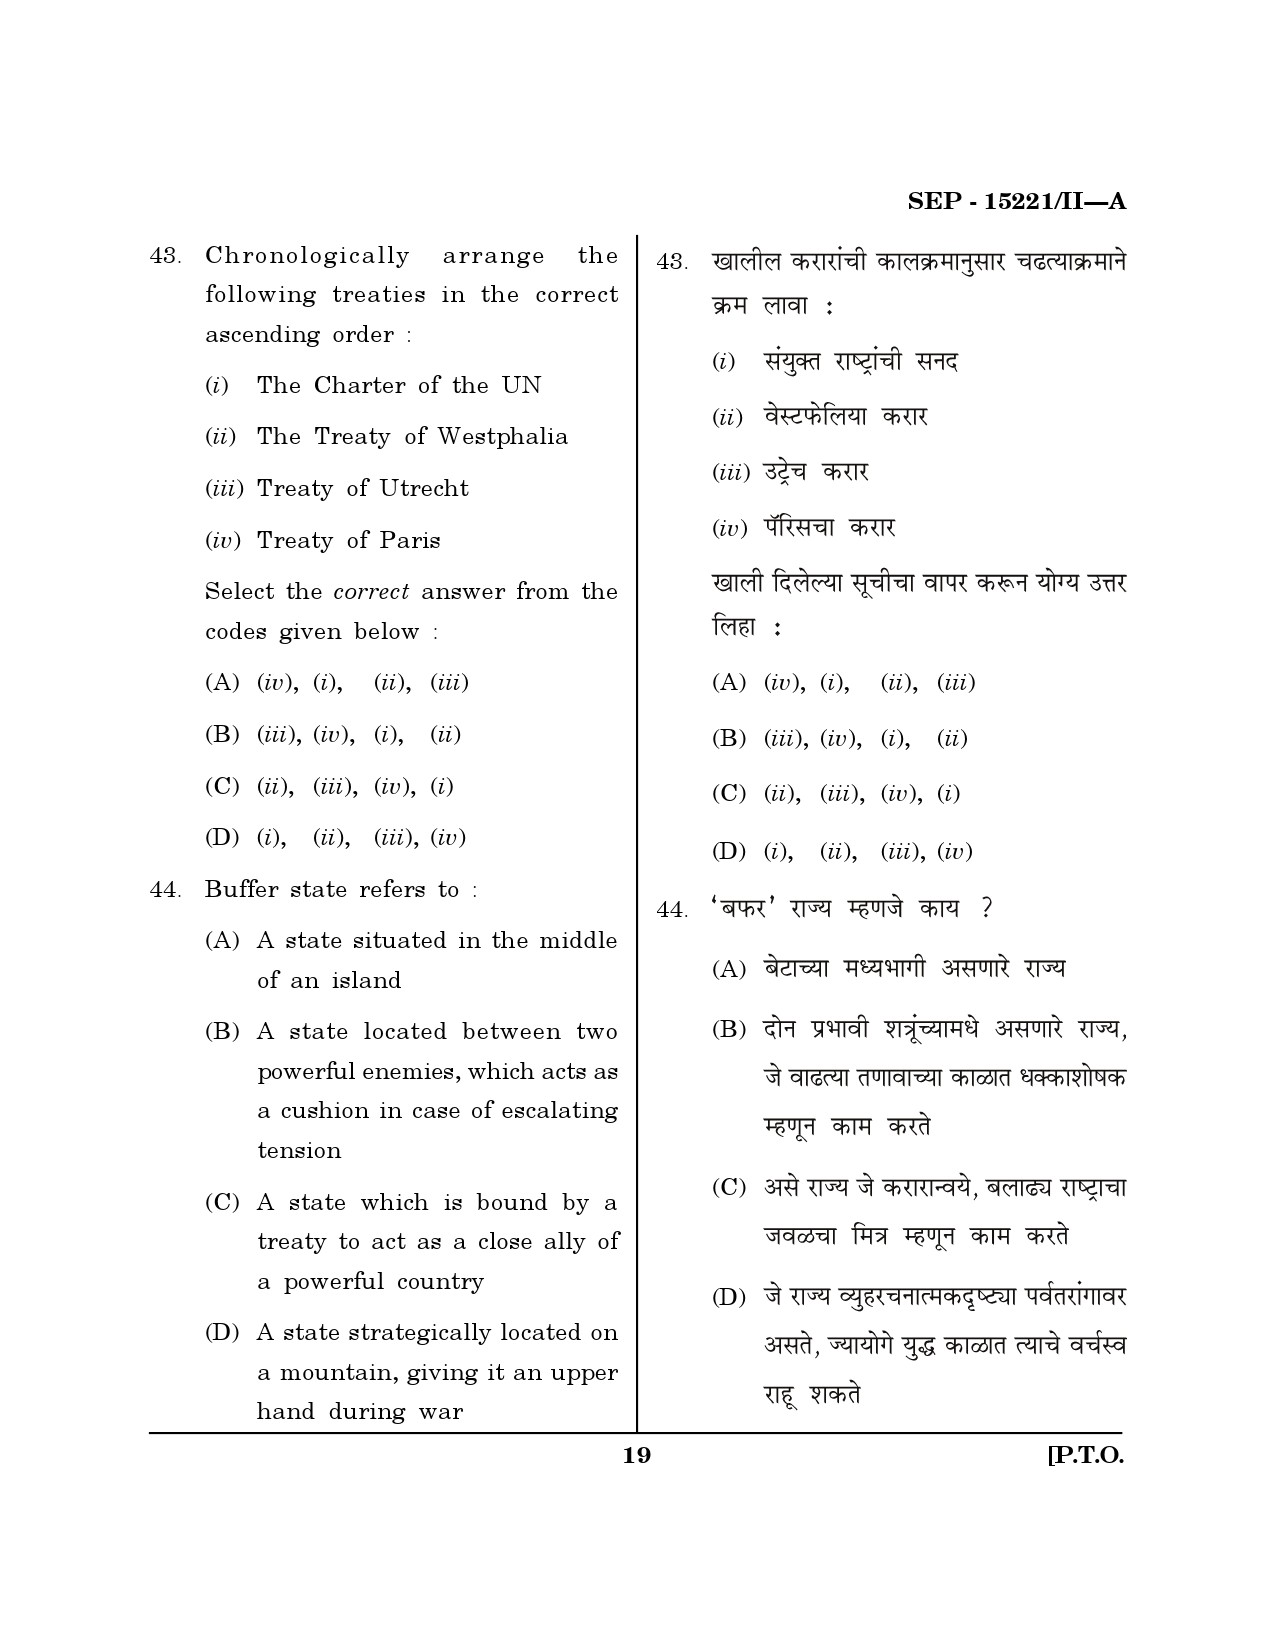 Maharashtra SET Political Science Exam Question Paper September 2021 18